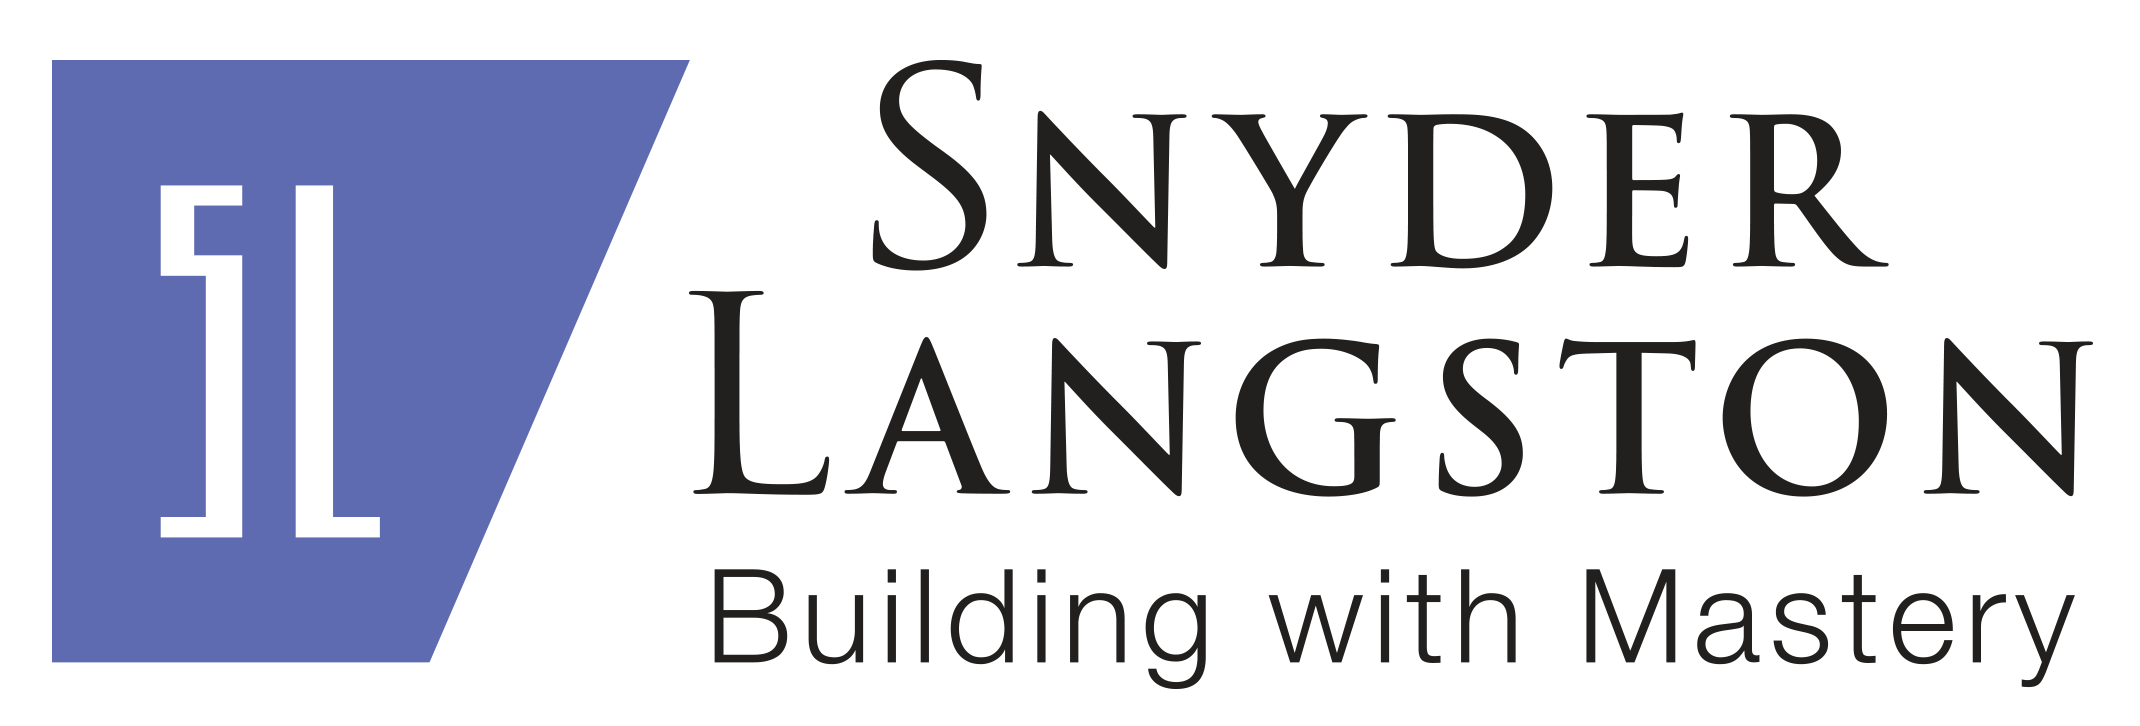 2017 SnyderLangston_full logo_large